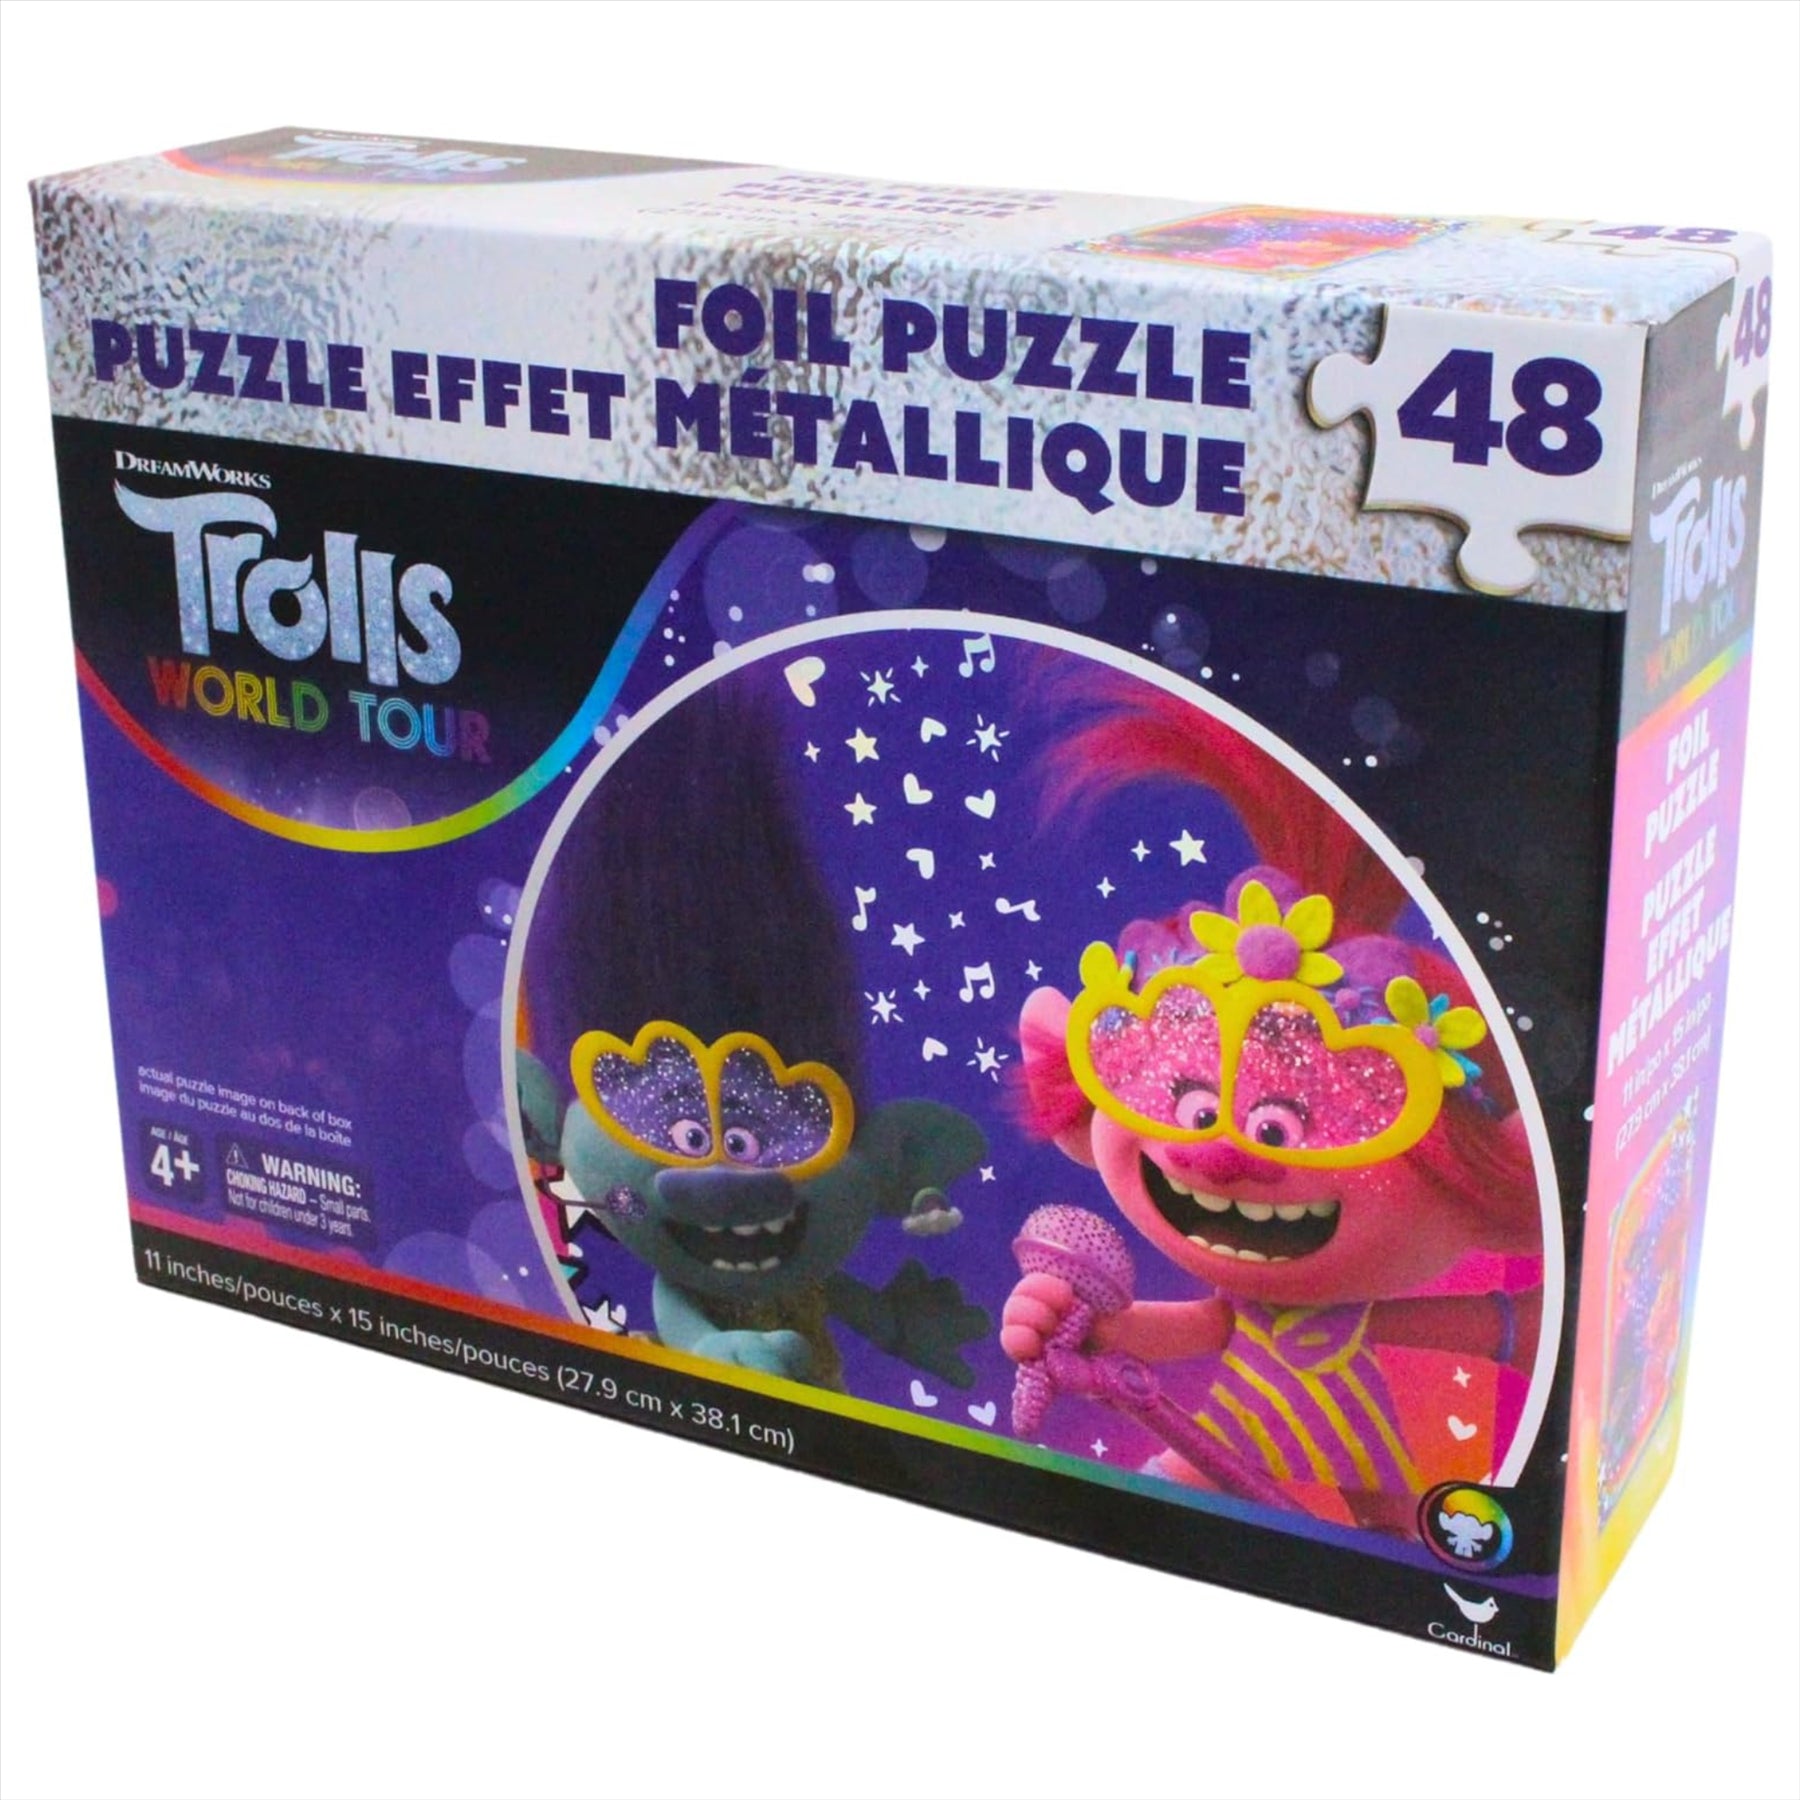 Dreamworks Trolls World Tour 48 Piece Jigsaw Puzzle with Foil Effect - Toptoys2u